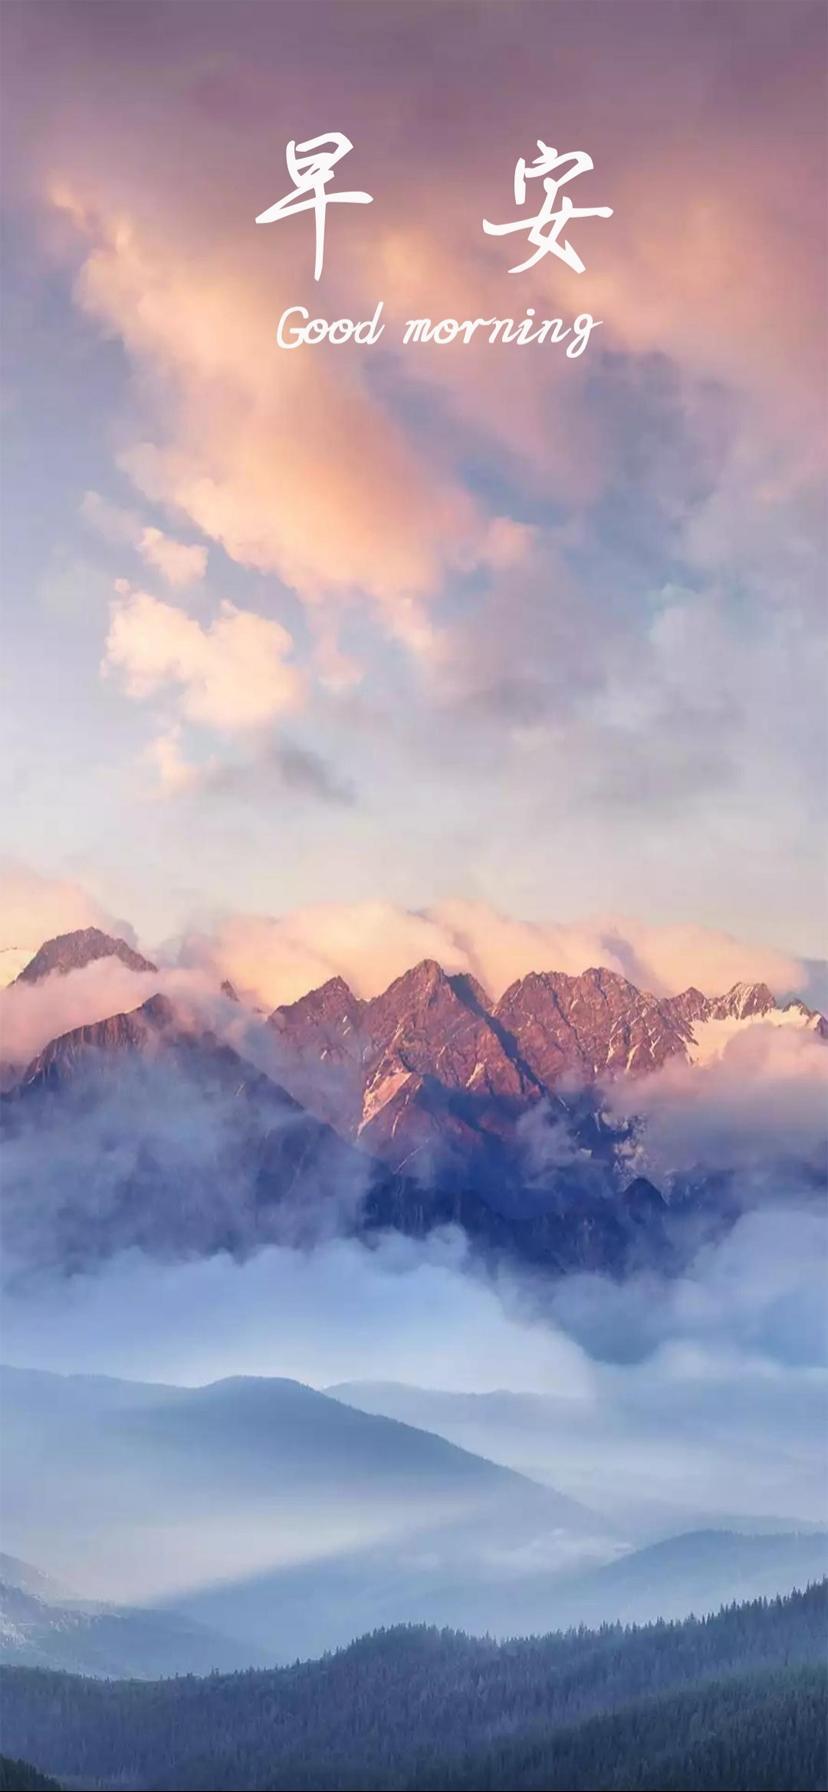 清晨云雾环绕的高山美景唯美手机壁纸图片